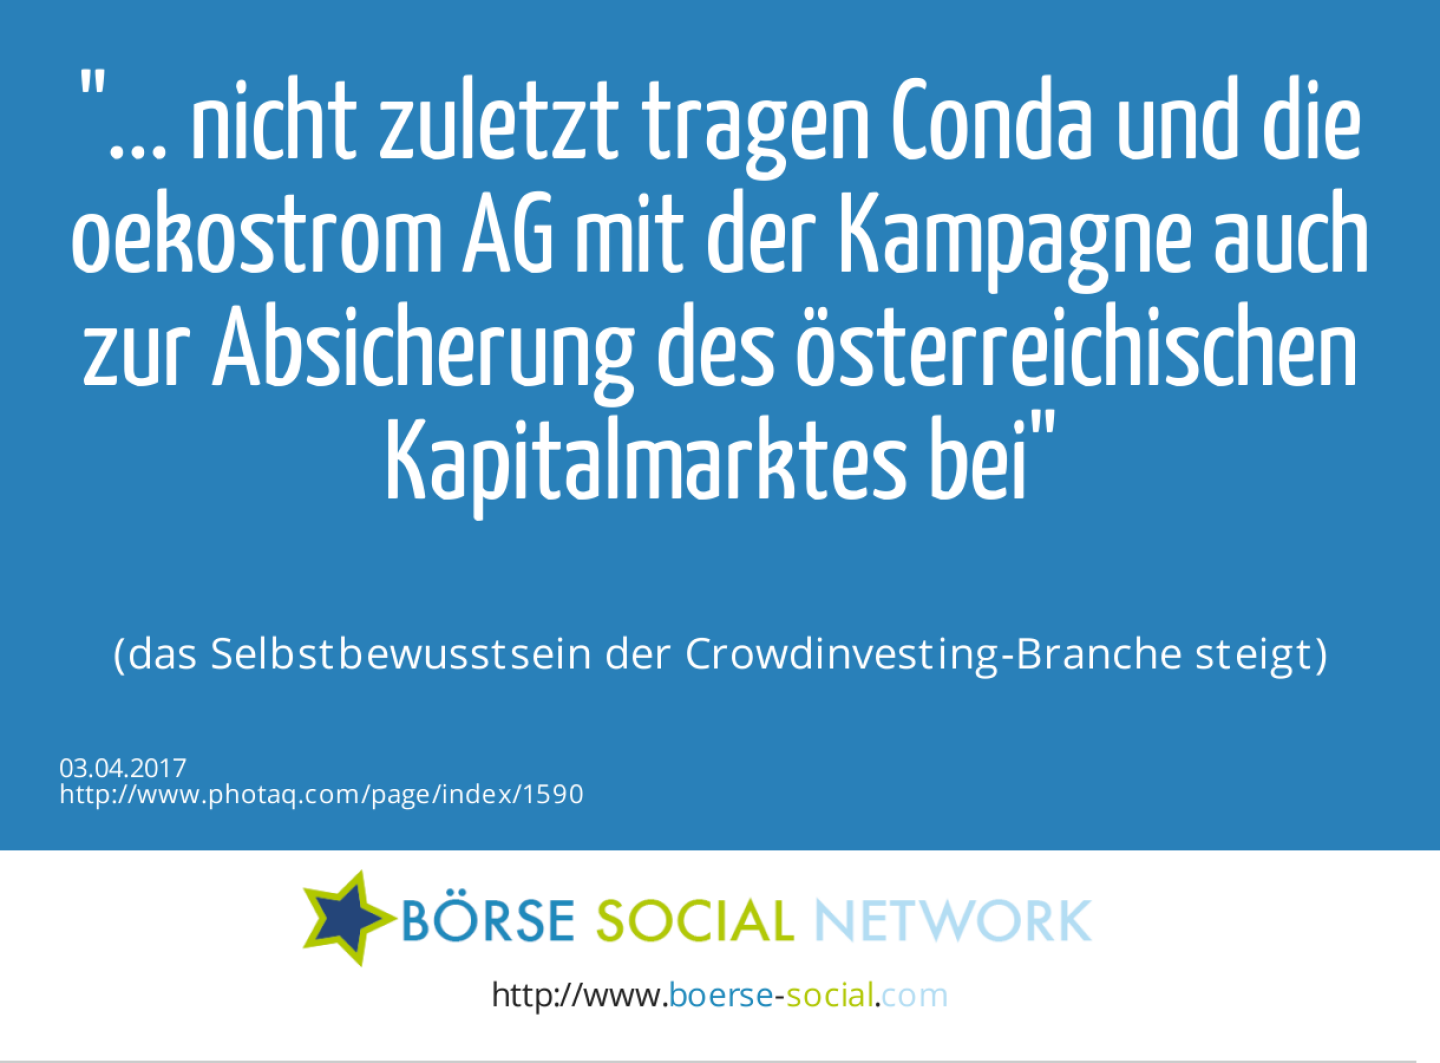 ... nicht zuletzt tragen Conda und die oekostrom AG mit der Kampagne auch zur Absicherung des österreichischen Kapitalmarktes bei<br><br> (das Selbstbewusstsein der Crowdinvesting-Branche steigt)